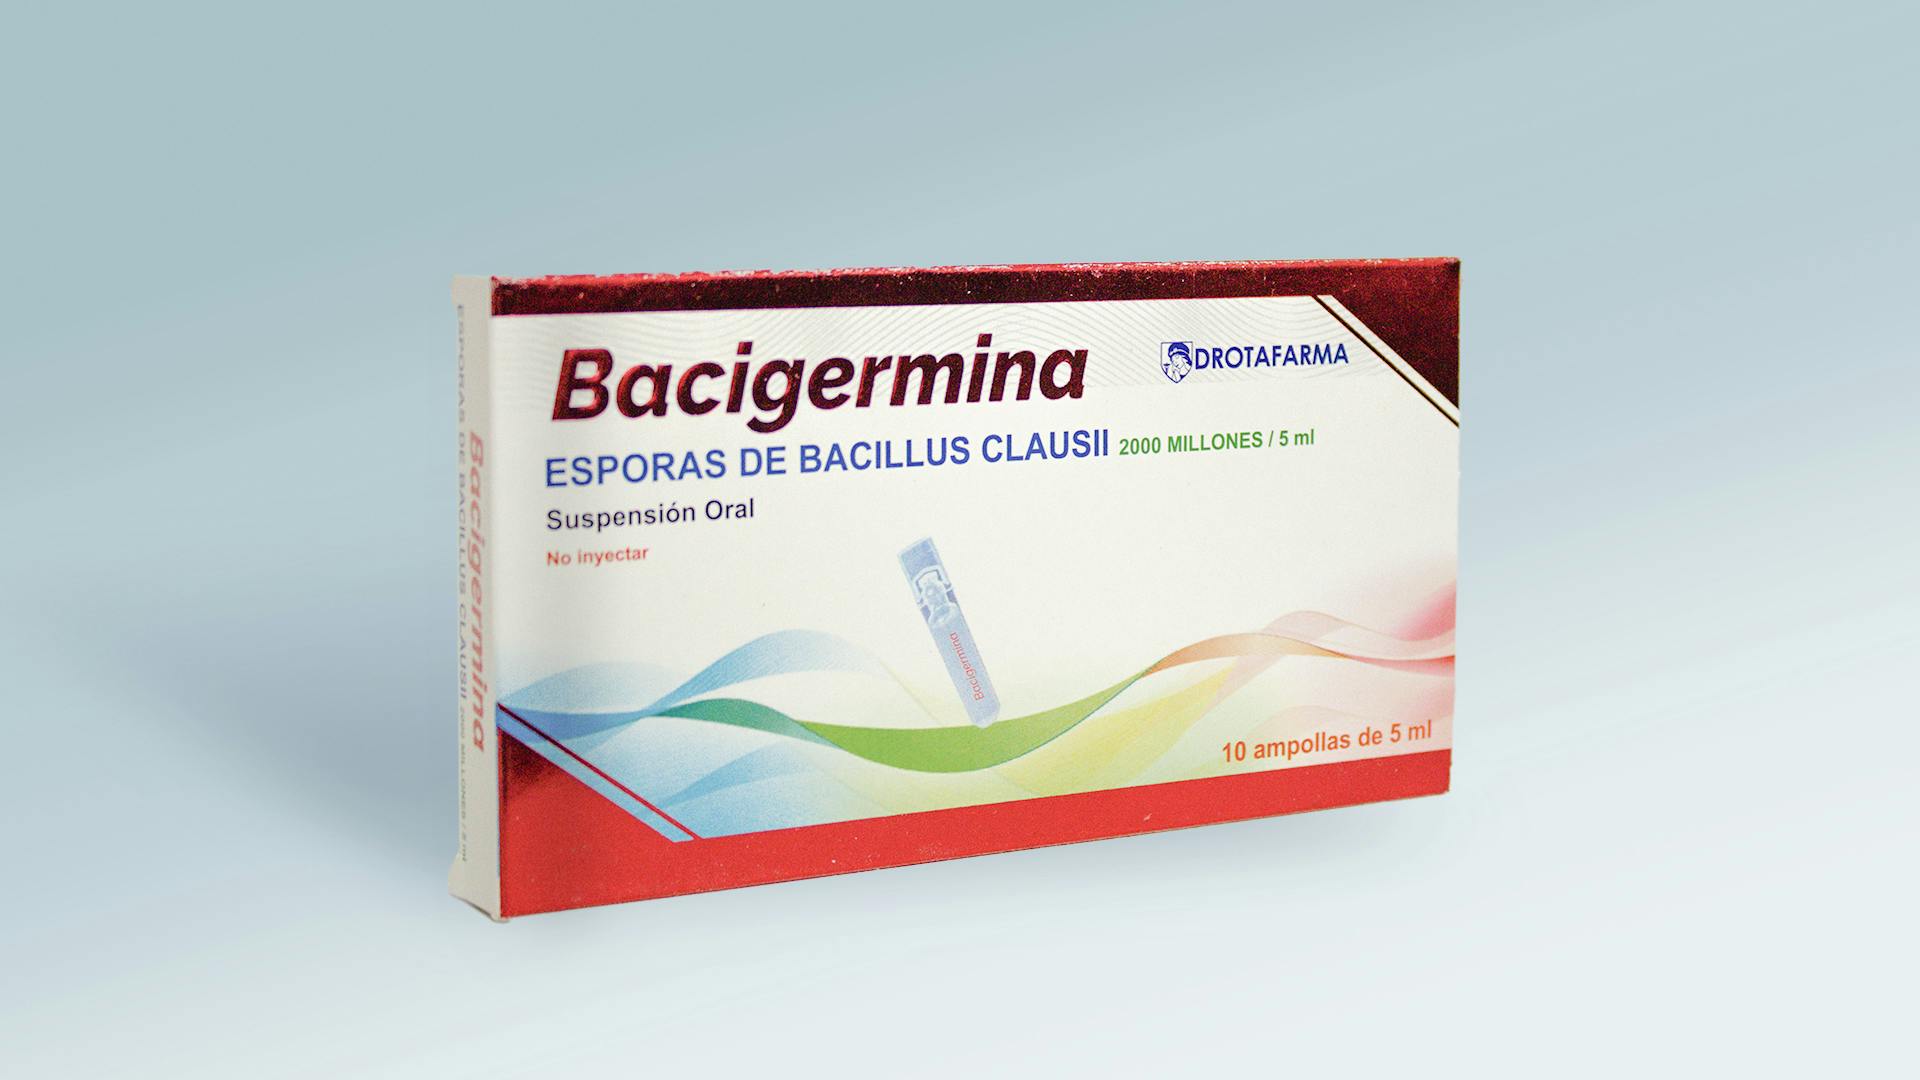 Bacigermina: Bacigermina es el aliado de confianza en el tratamiento de procesos diarreicos agudos de origen infeccioso. Formulado con esporas de Bacillus Clausii, este innovador producto ayuda a reestablecer la flora intestinal, aliviando de manera efectiva los síntomas diarreicos y promoviendo una pronta recuperación. Bacigermina actúa de forma precisa y rápida.